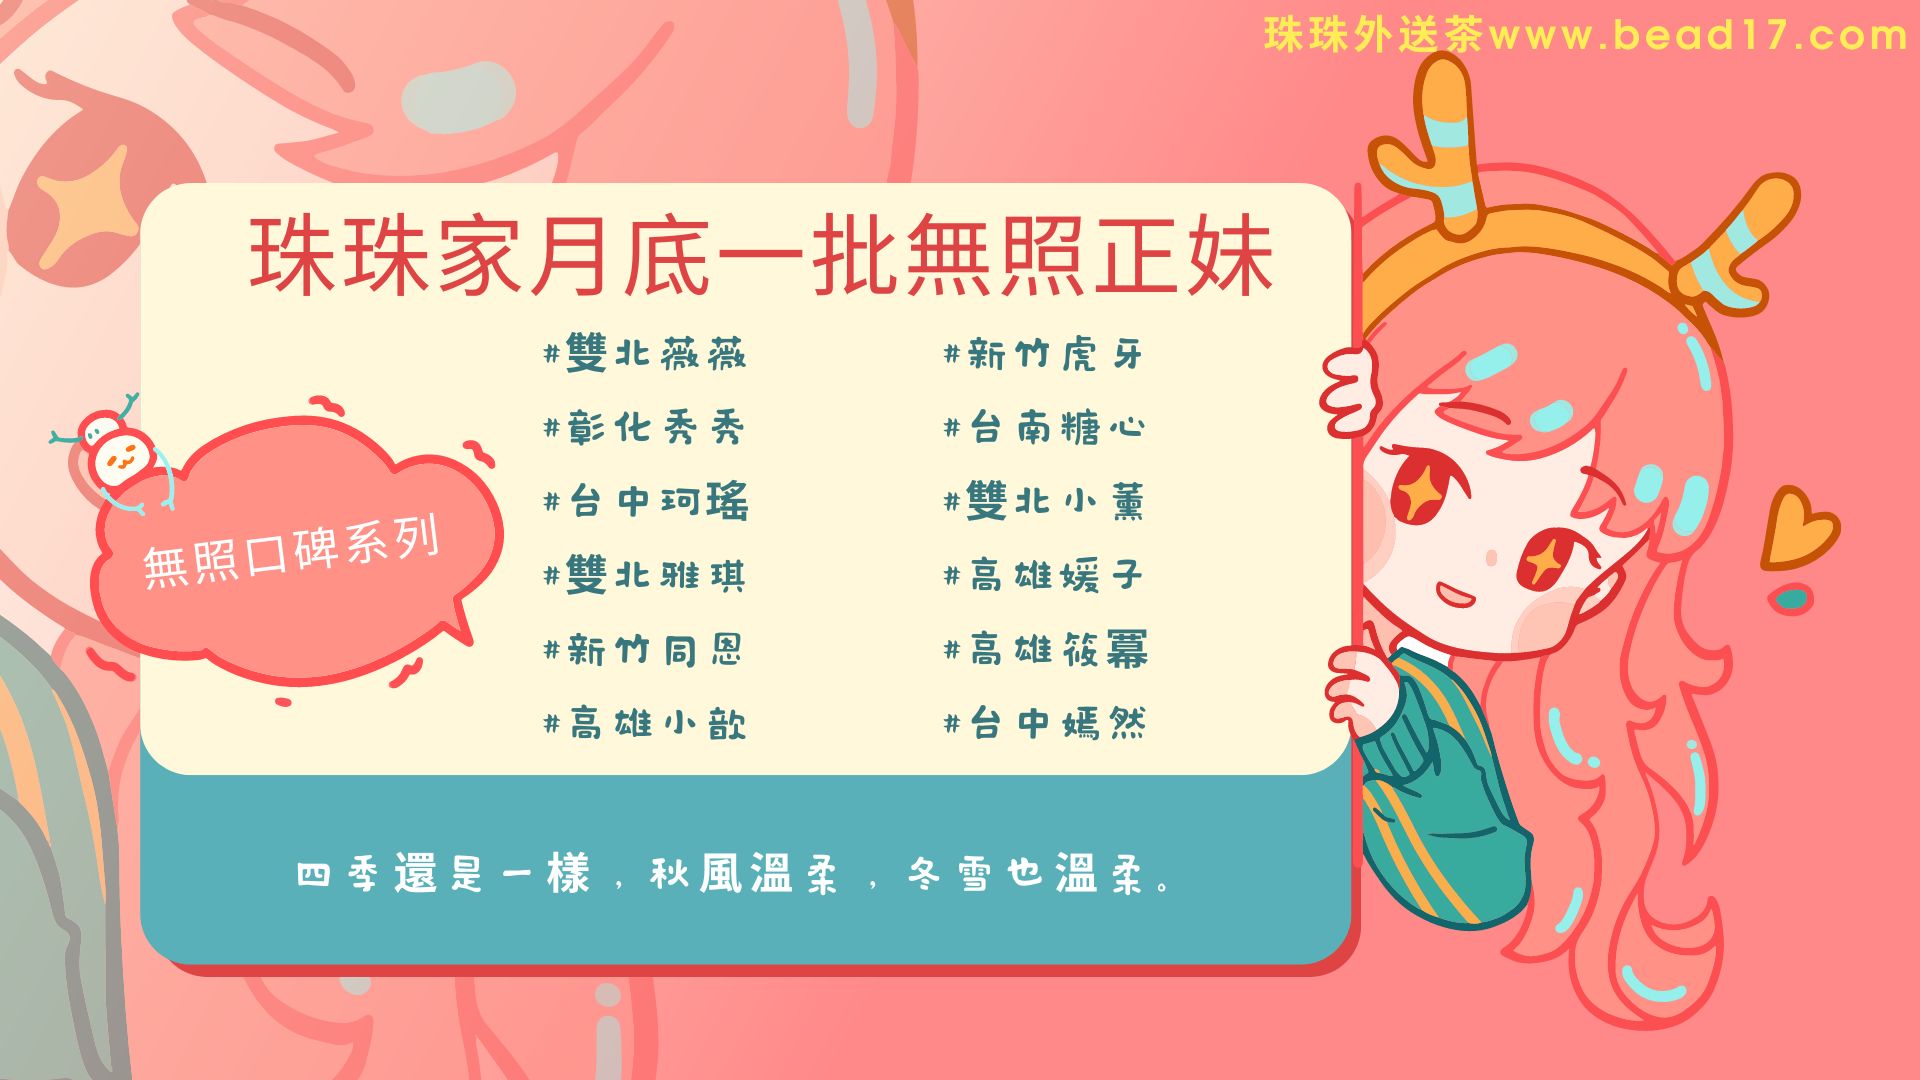 红粉色二次元动漫游戏人物场景卡通游戏介绍中文横版游戏社交媒体.jpg